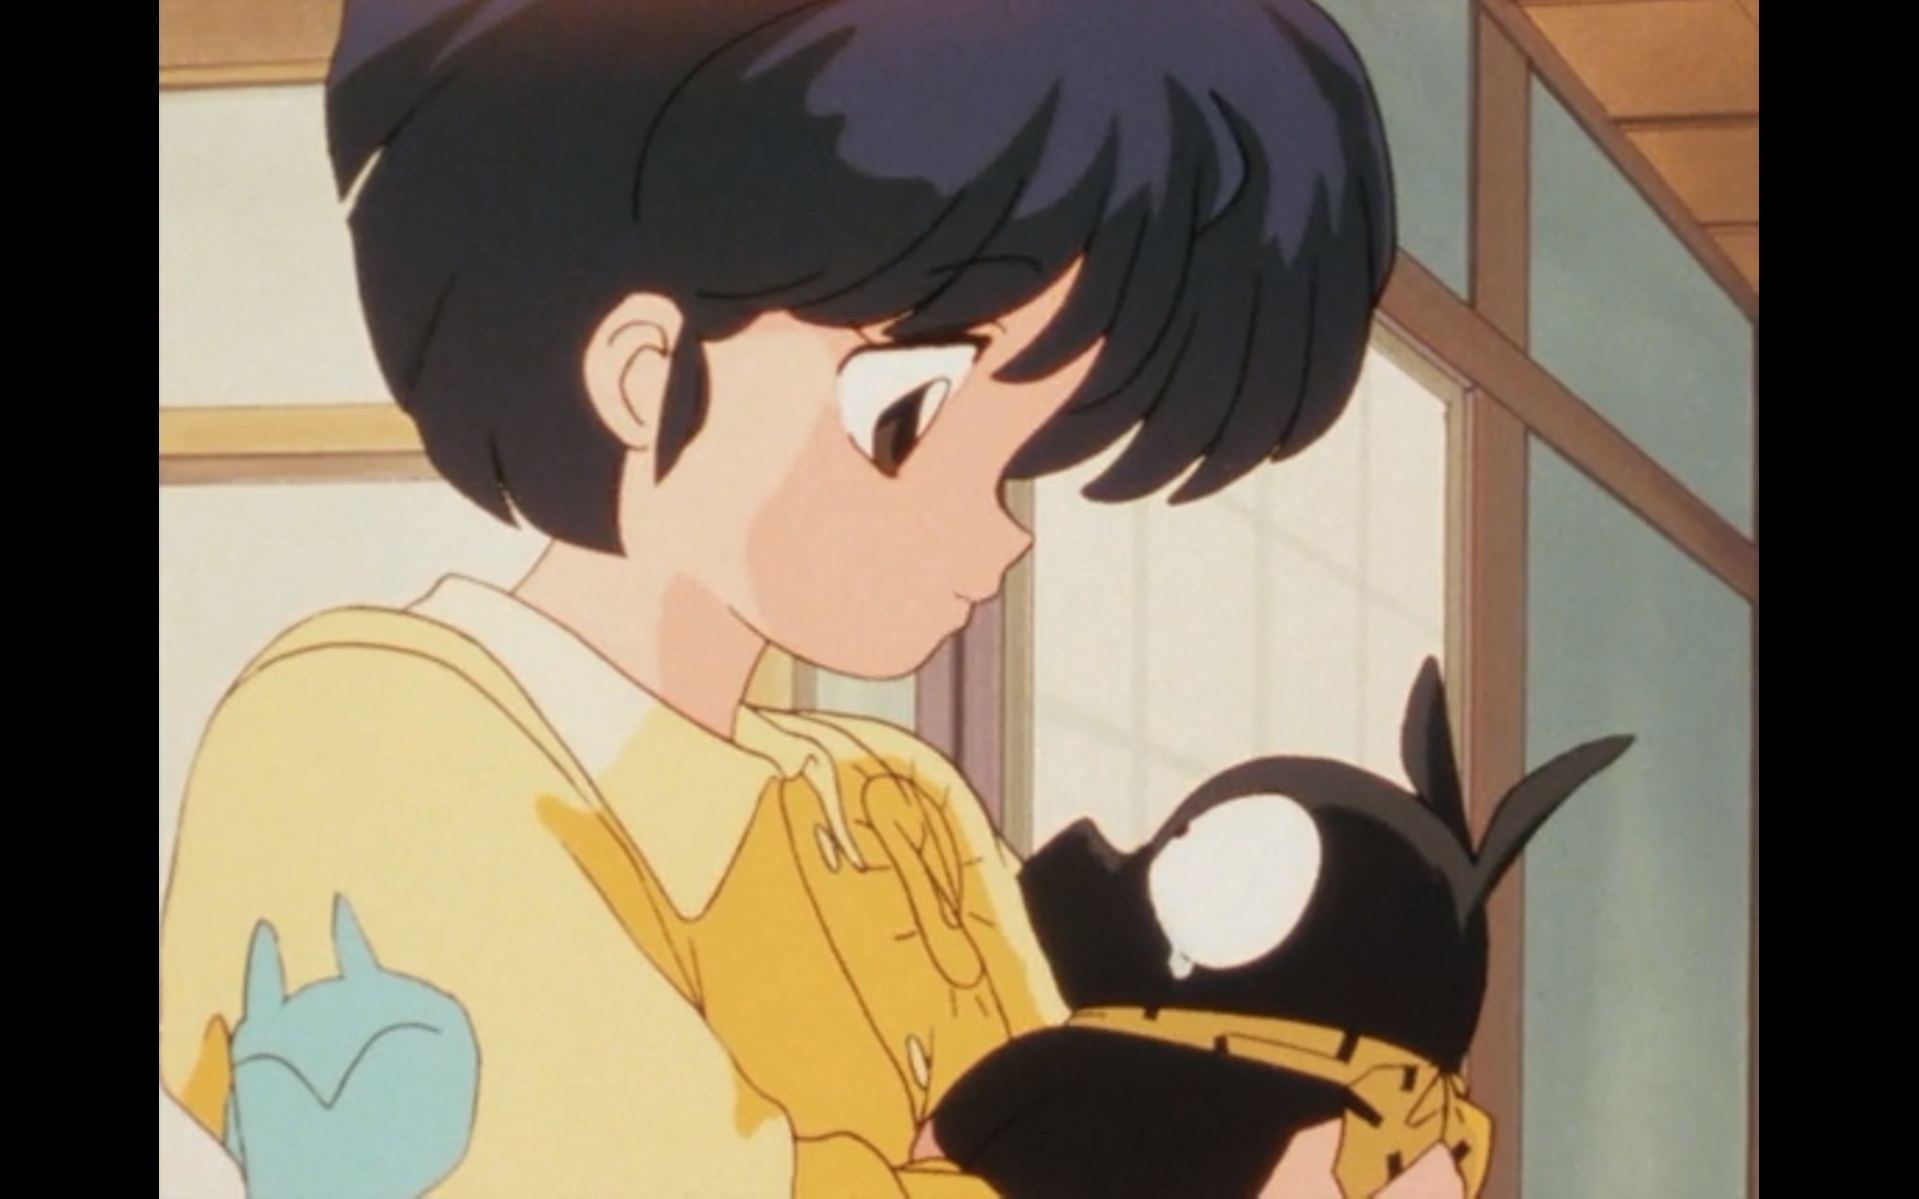 Akane Tendo kuschelt sich in einer Szene aus dem TV-Anime Ranma 1/2 an P-chan (heimlich Ryoga Hibiki in seiner verfluchten Ferkelgestalt).